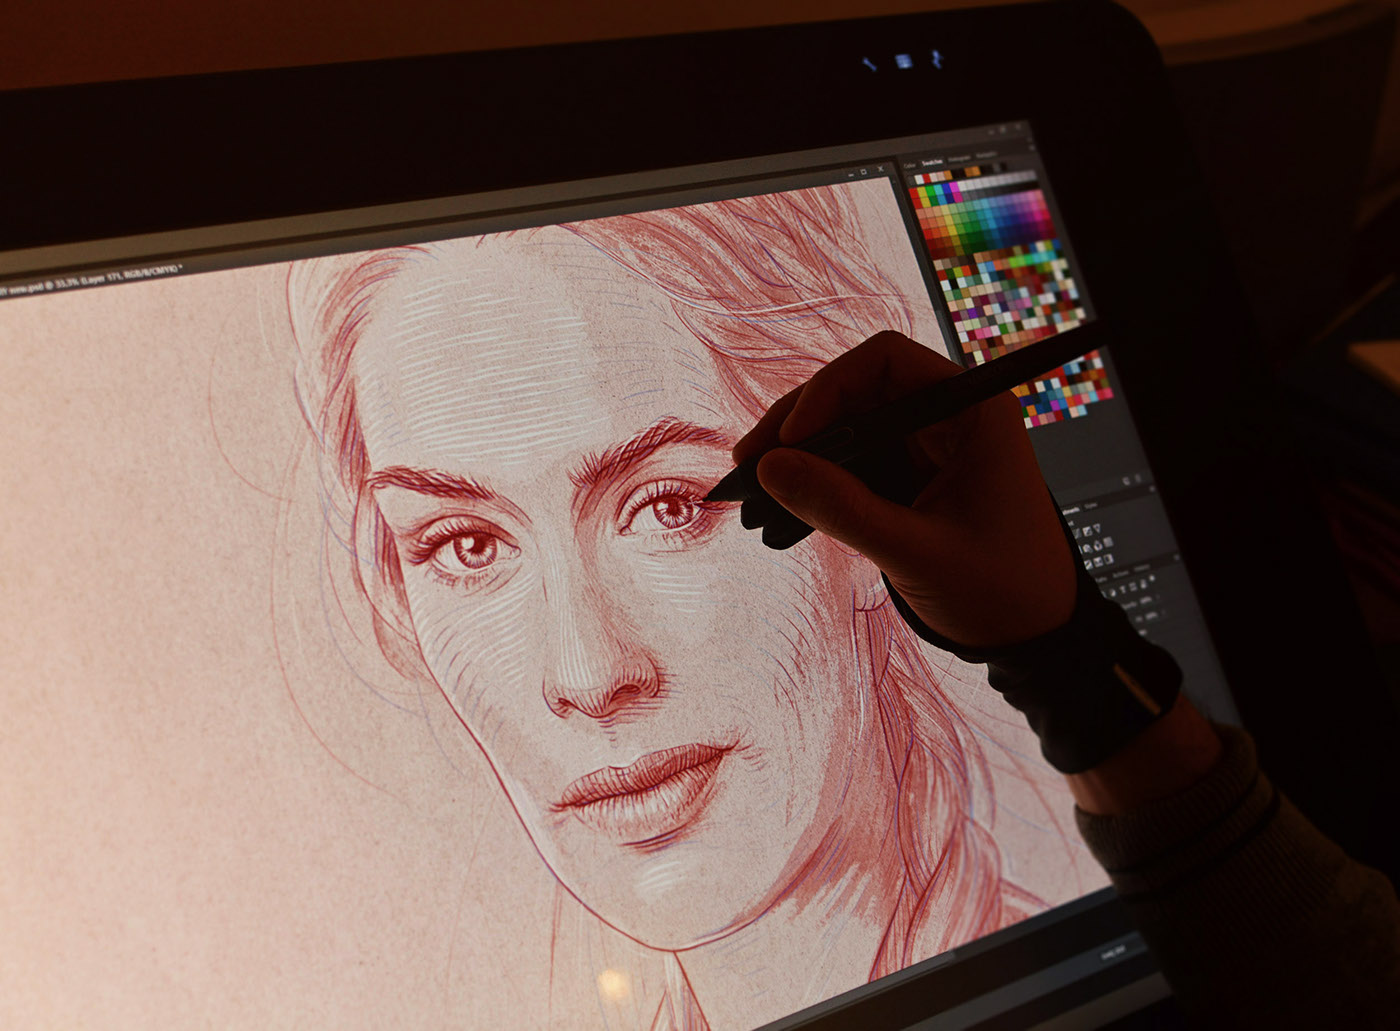 Adobe Portfolio Game of Thrones Arya Stark  jon stark lannister tyrion cersei mellisandre portrait sketch